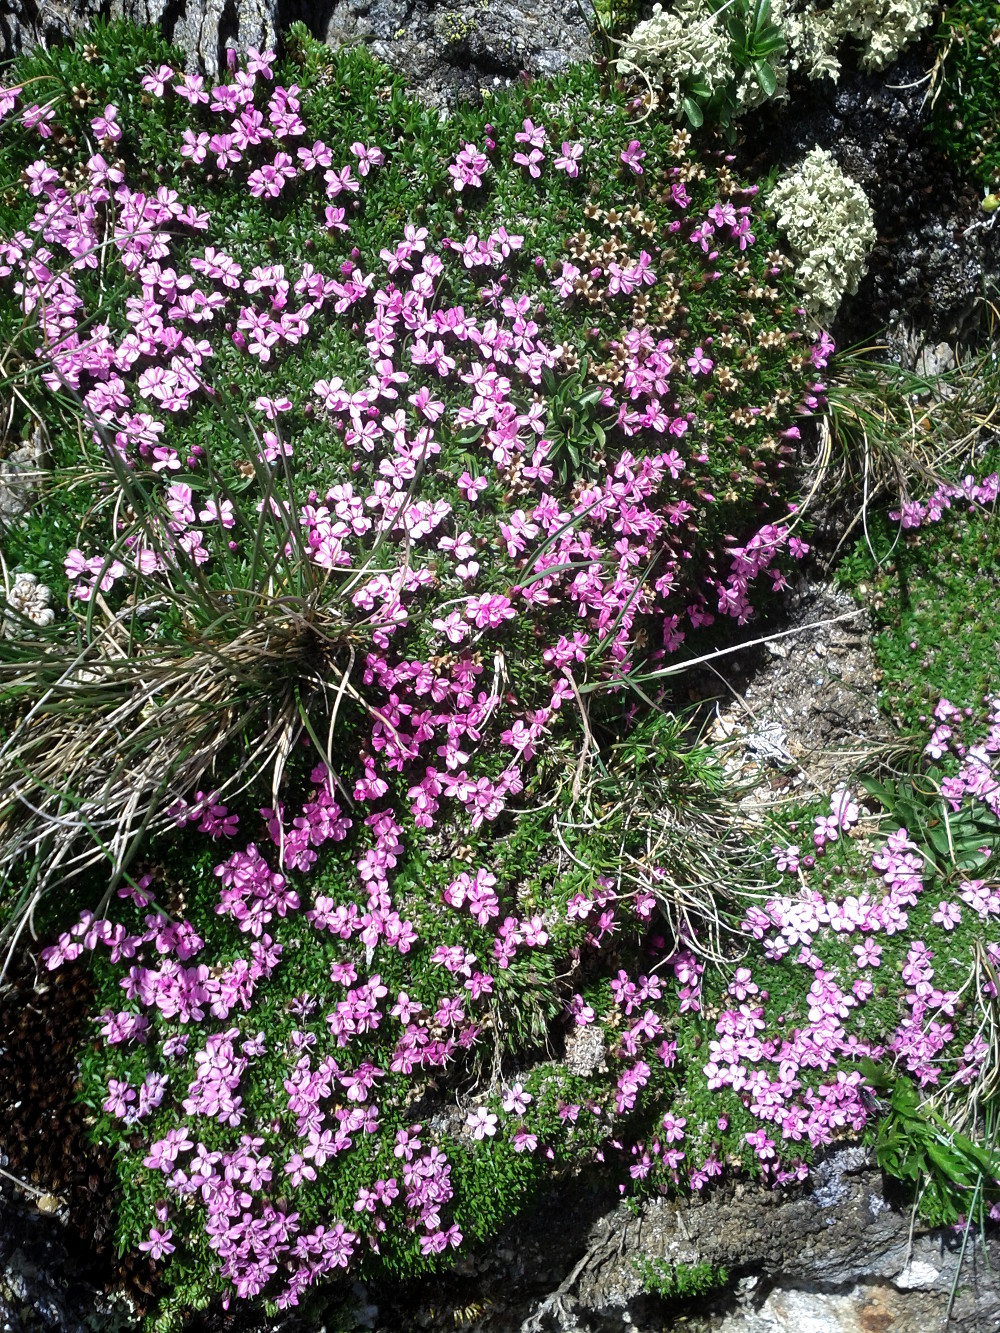 Pink alpine flowers at Birnlücken, Hohe Tauern